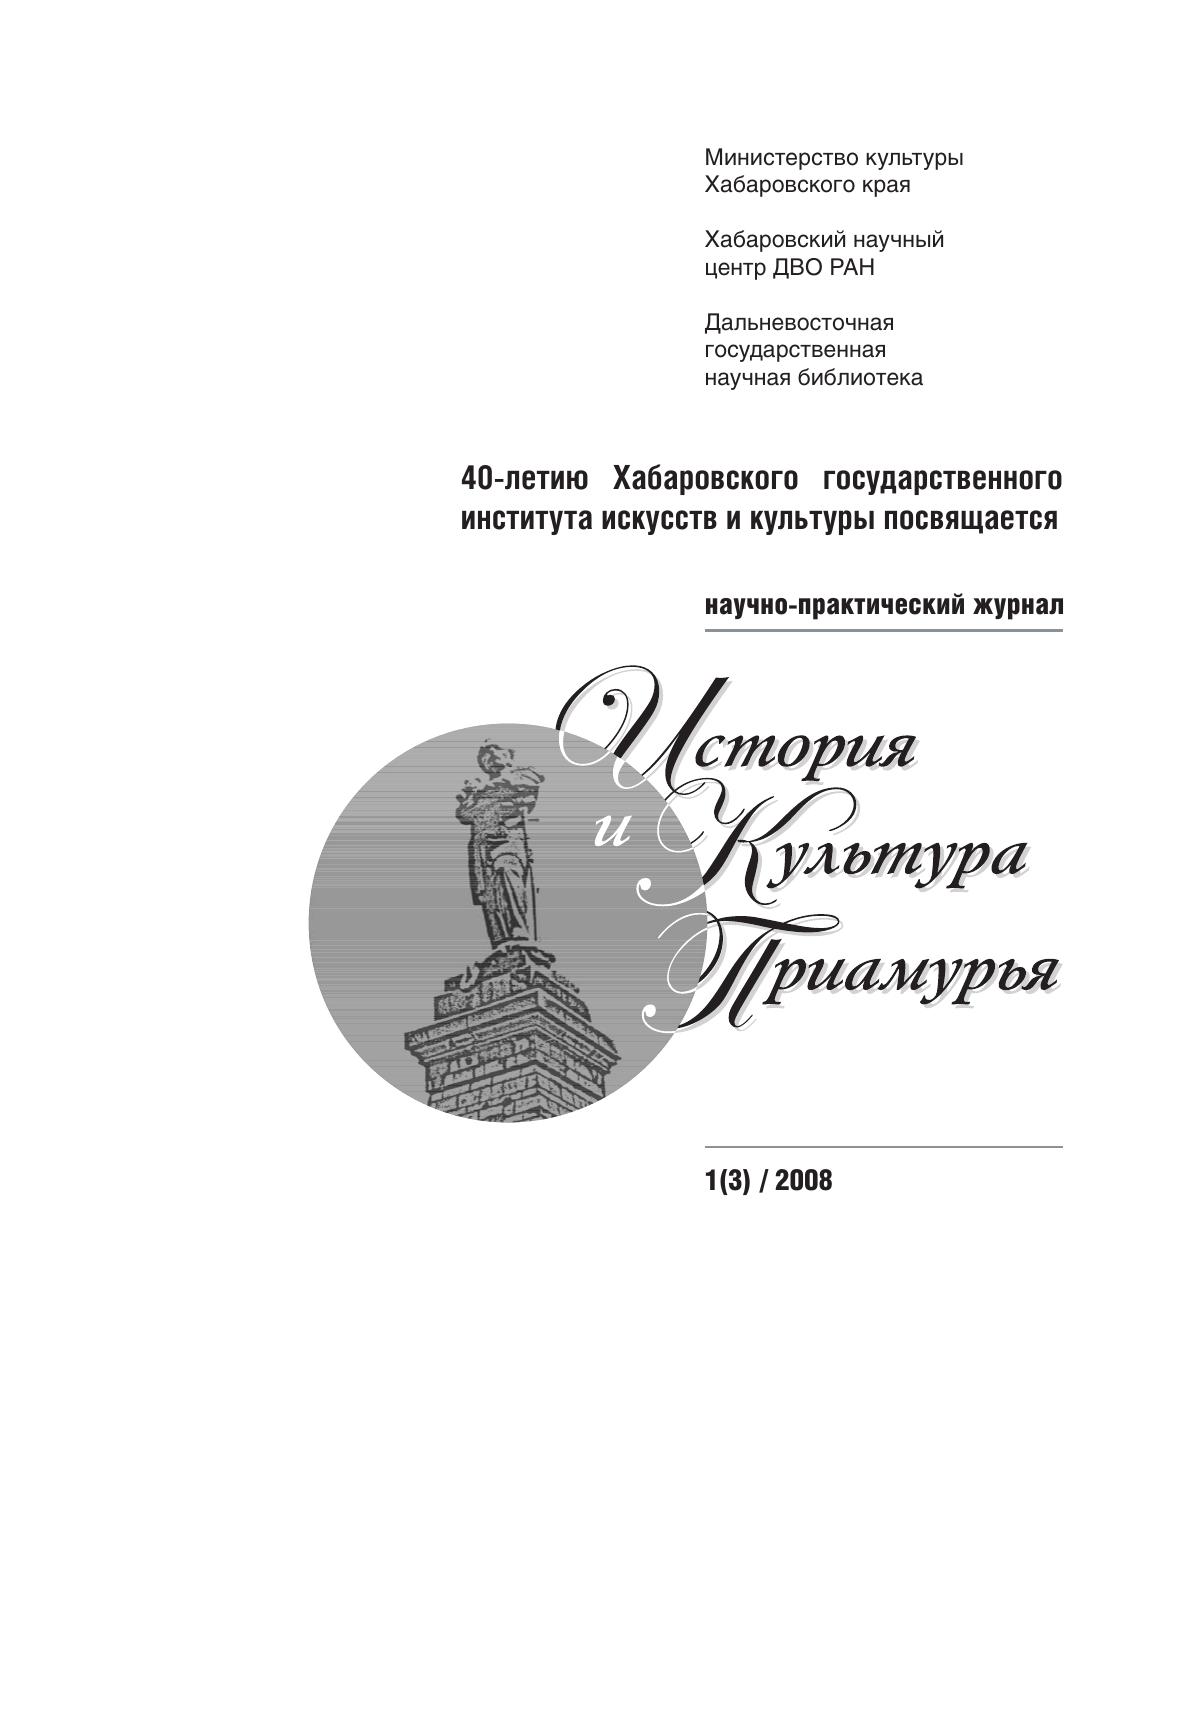 История и культура Приамурья №1 (3) 2008